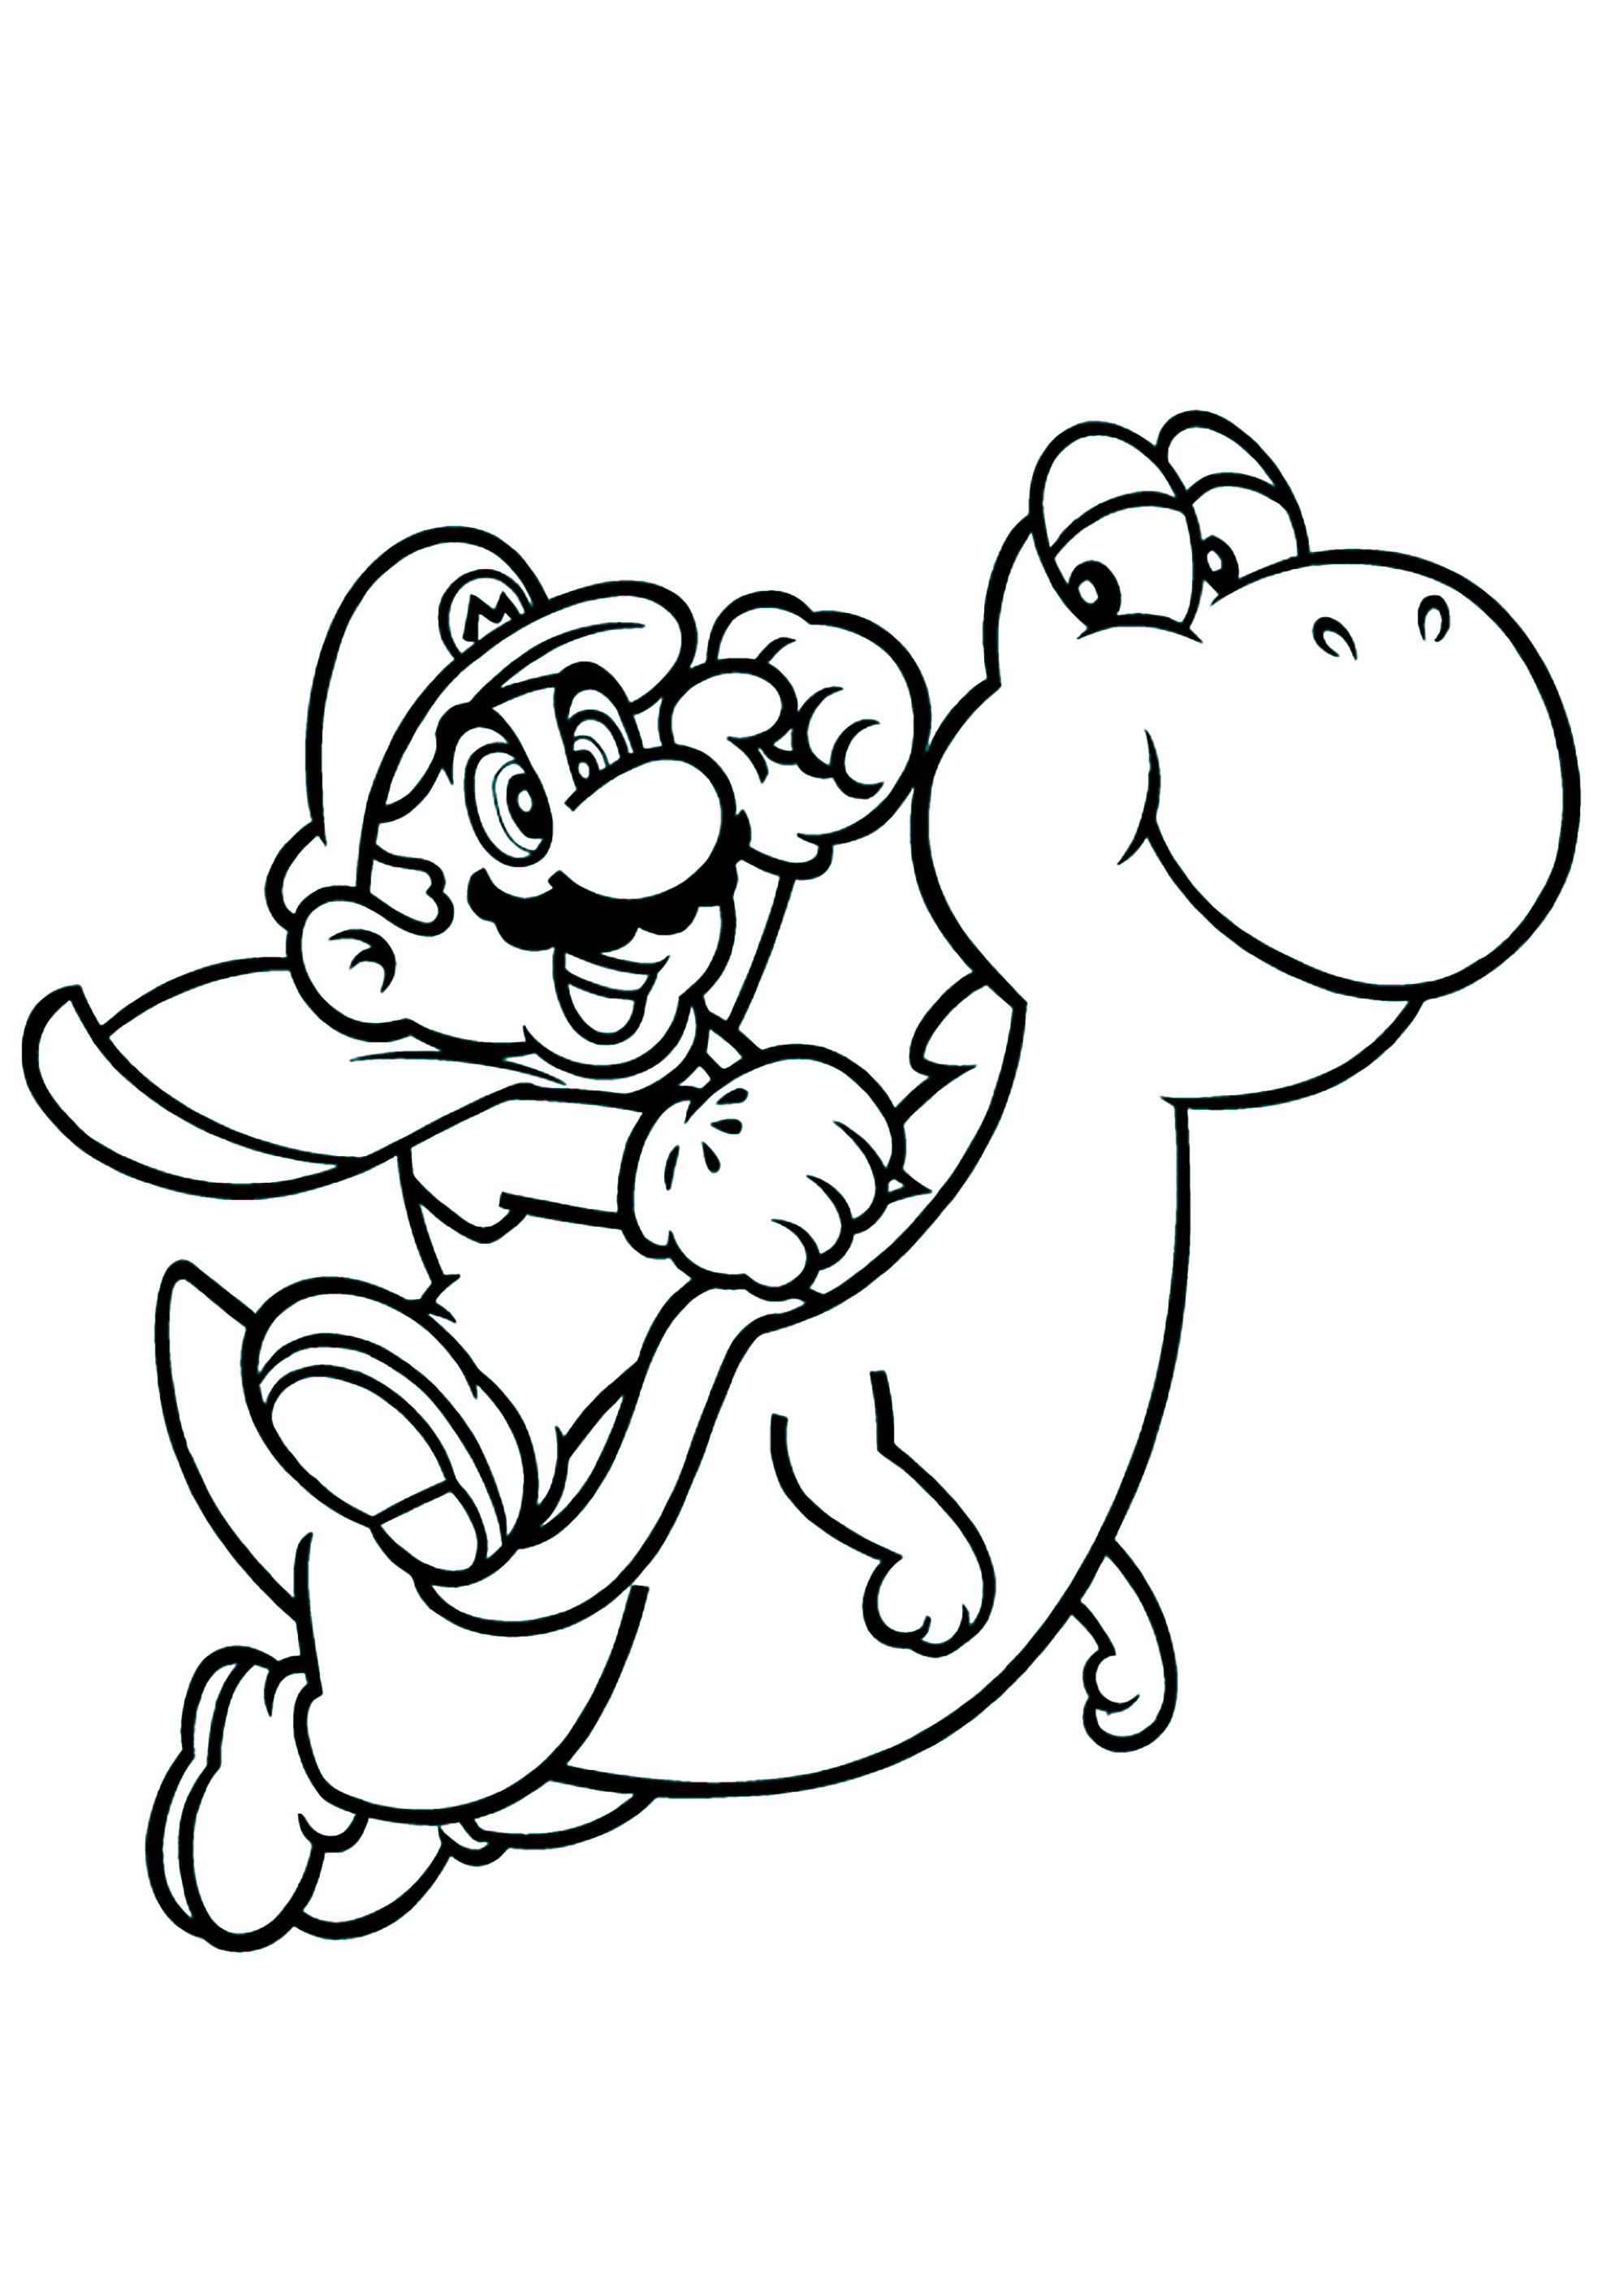 Mario sobre su amigo dinosaurio Yoshi